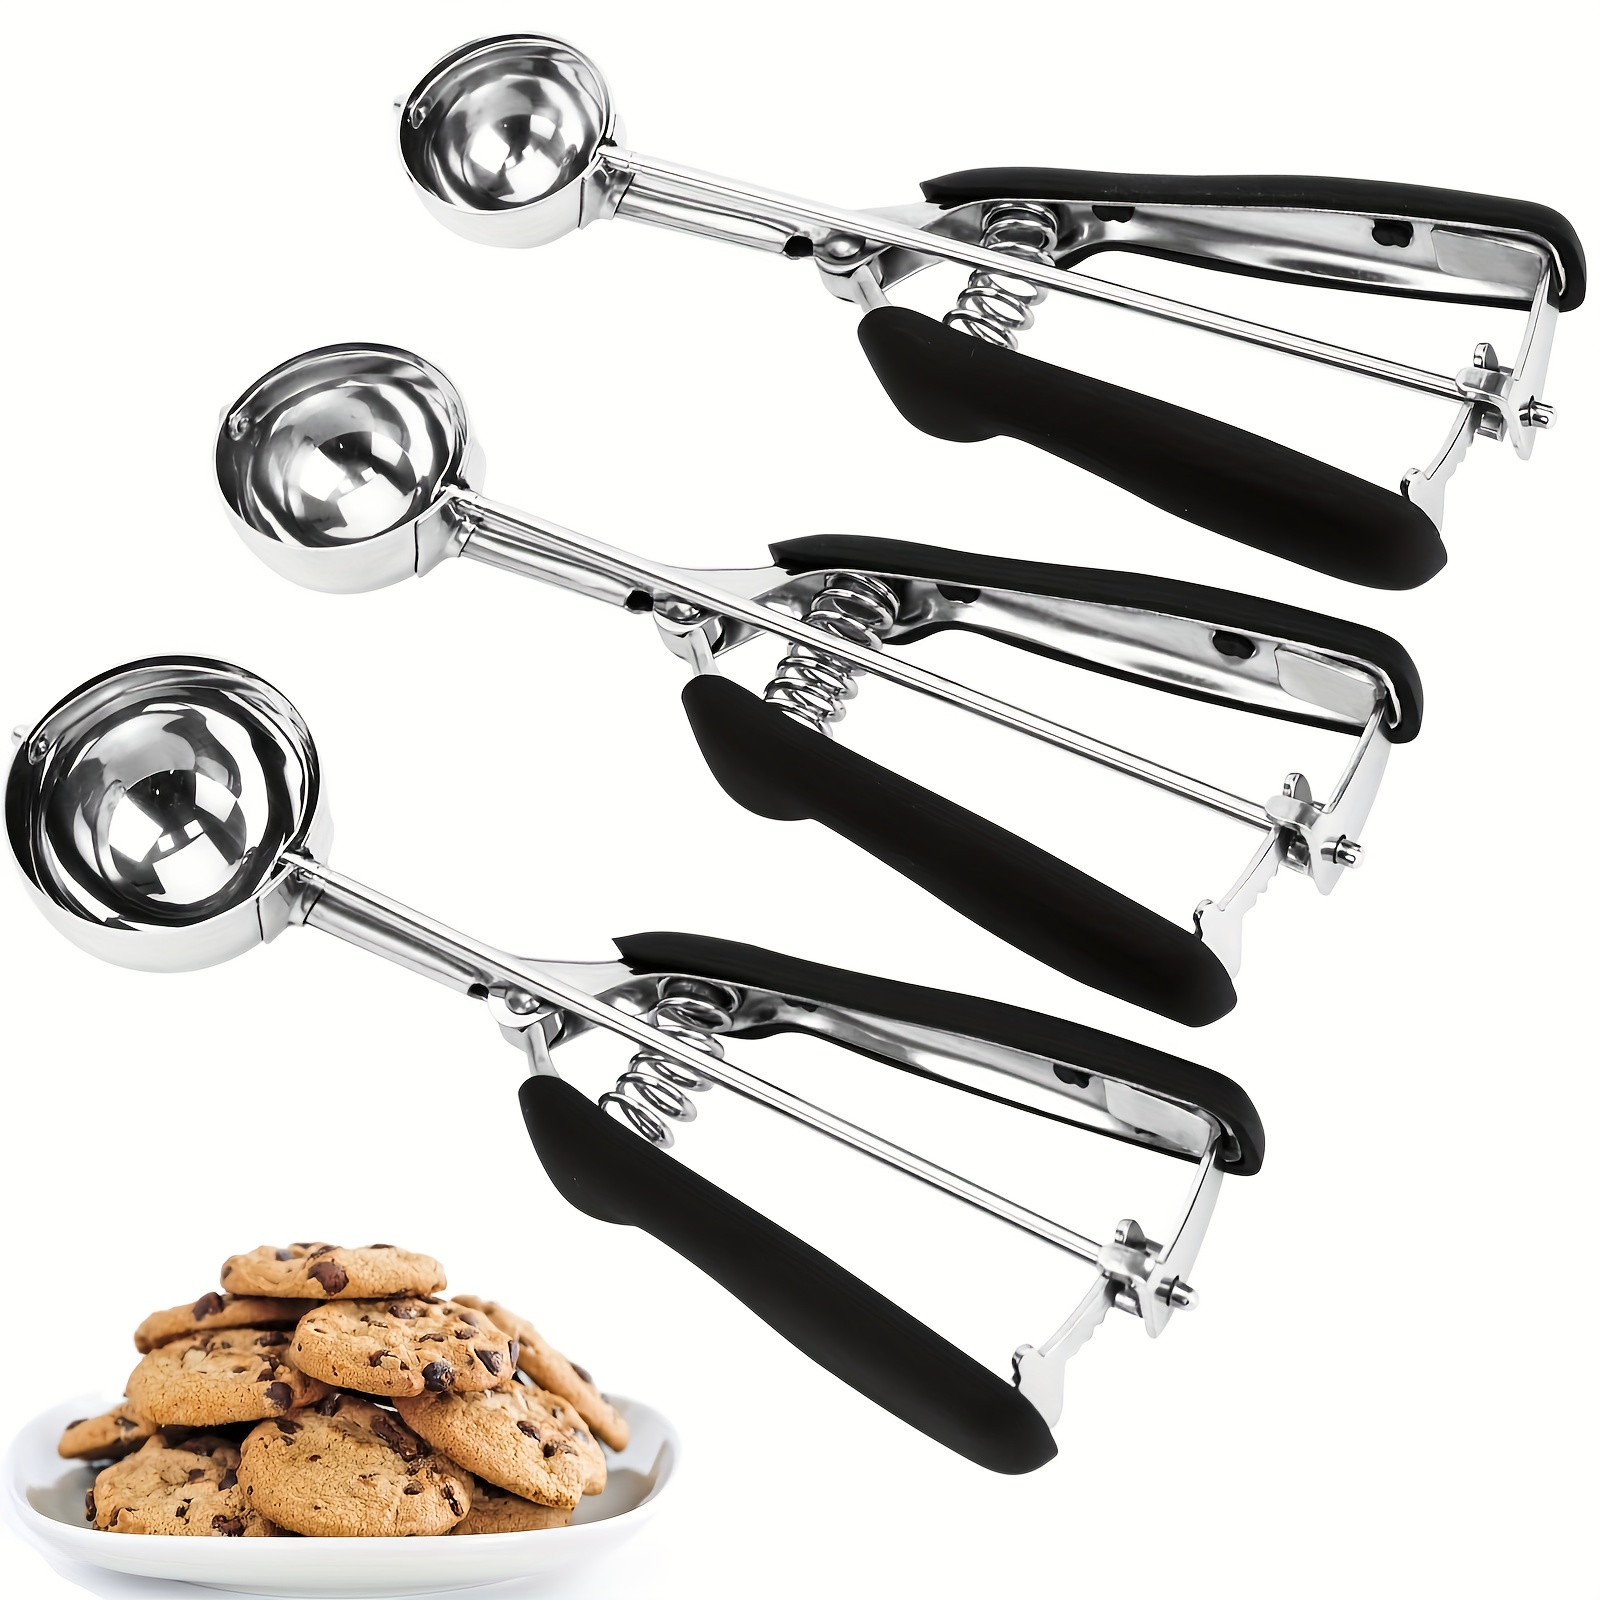 Good Tool: Cookie Scoops